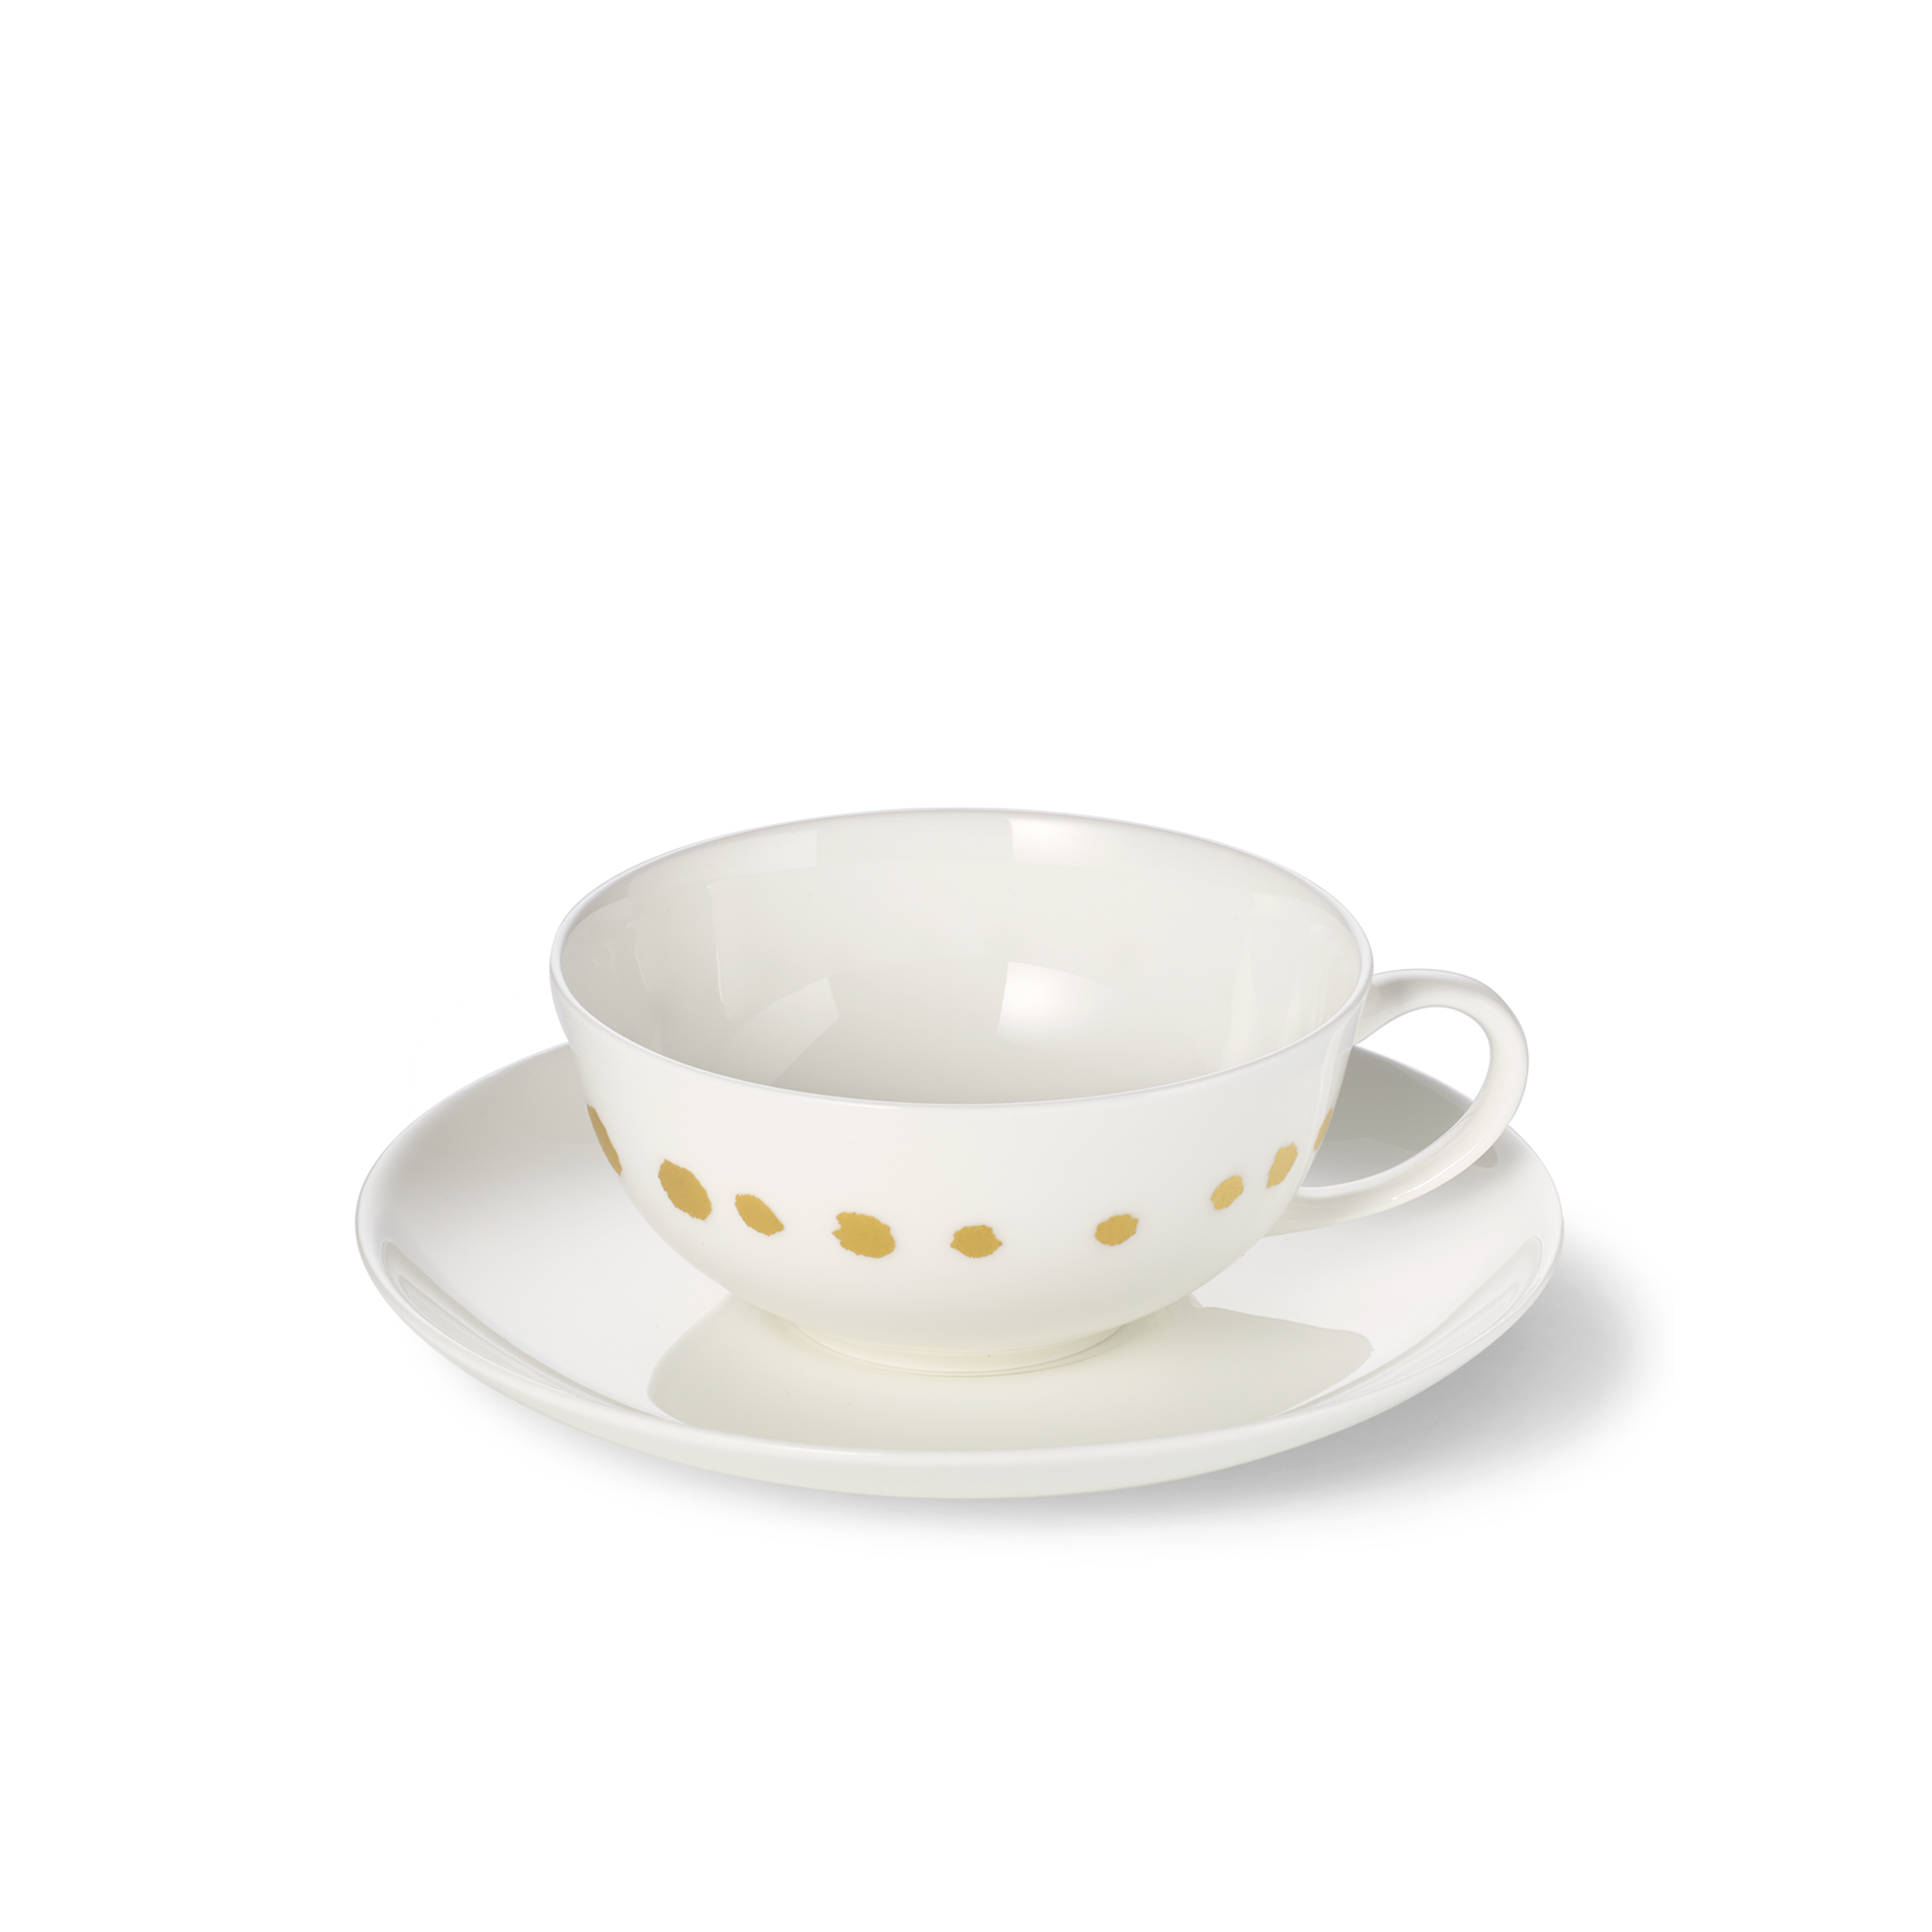 Golden Pearls teacup